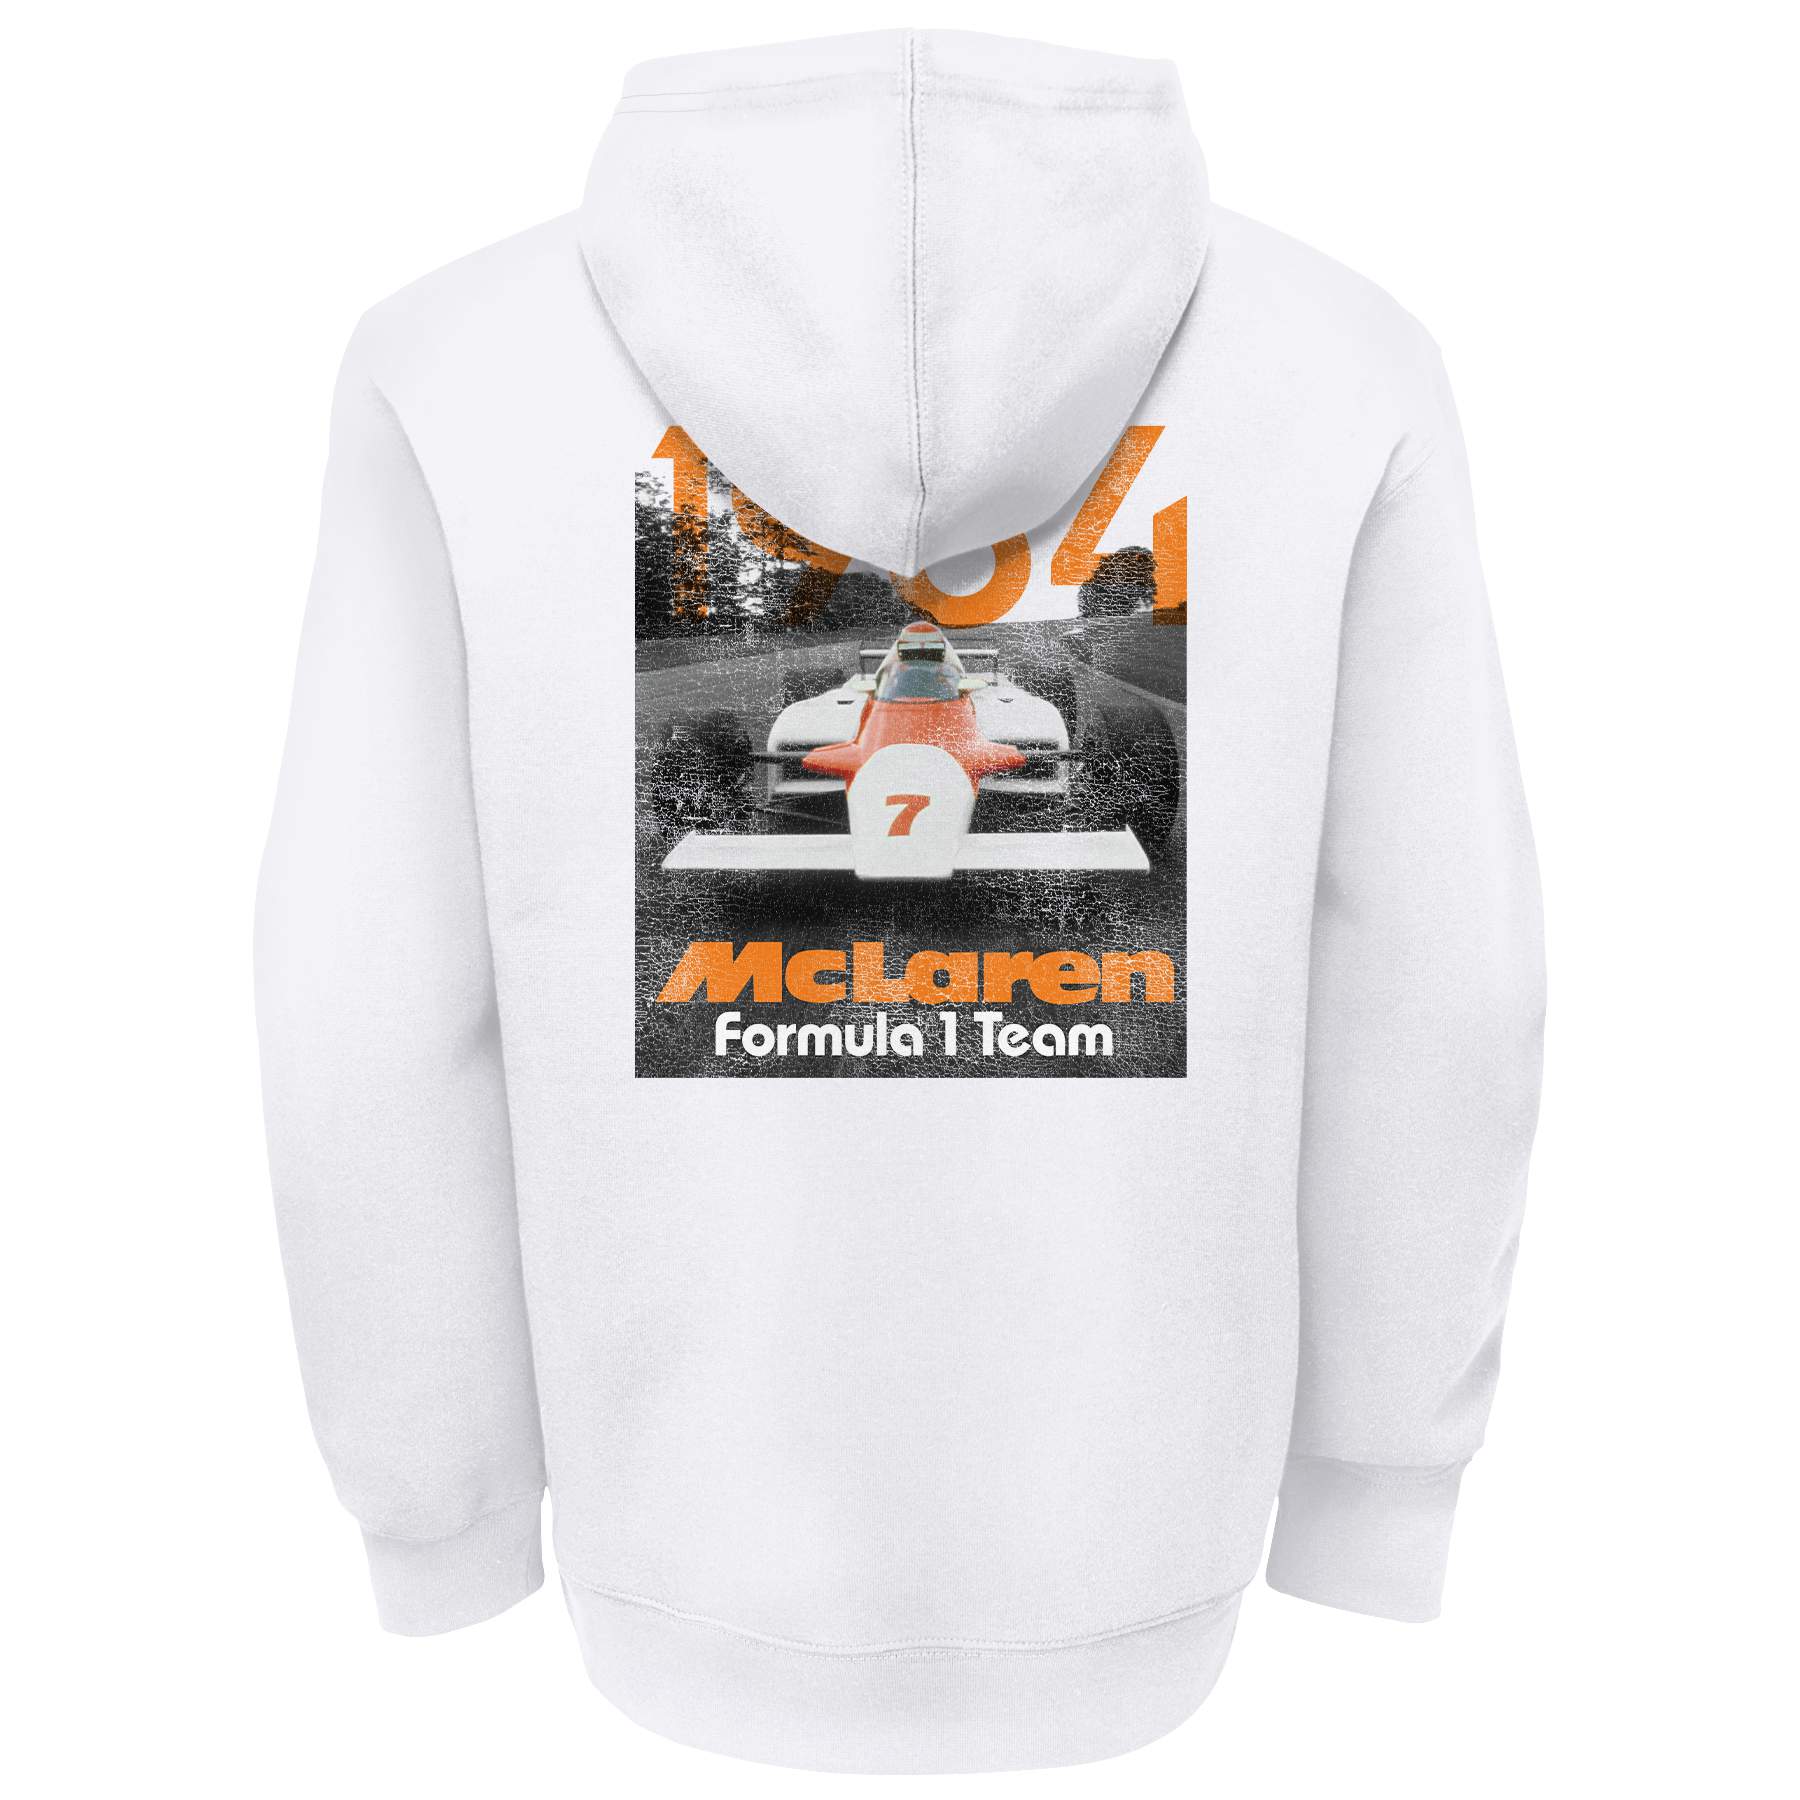 McLaren Mens Jackets and Sweatshirts